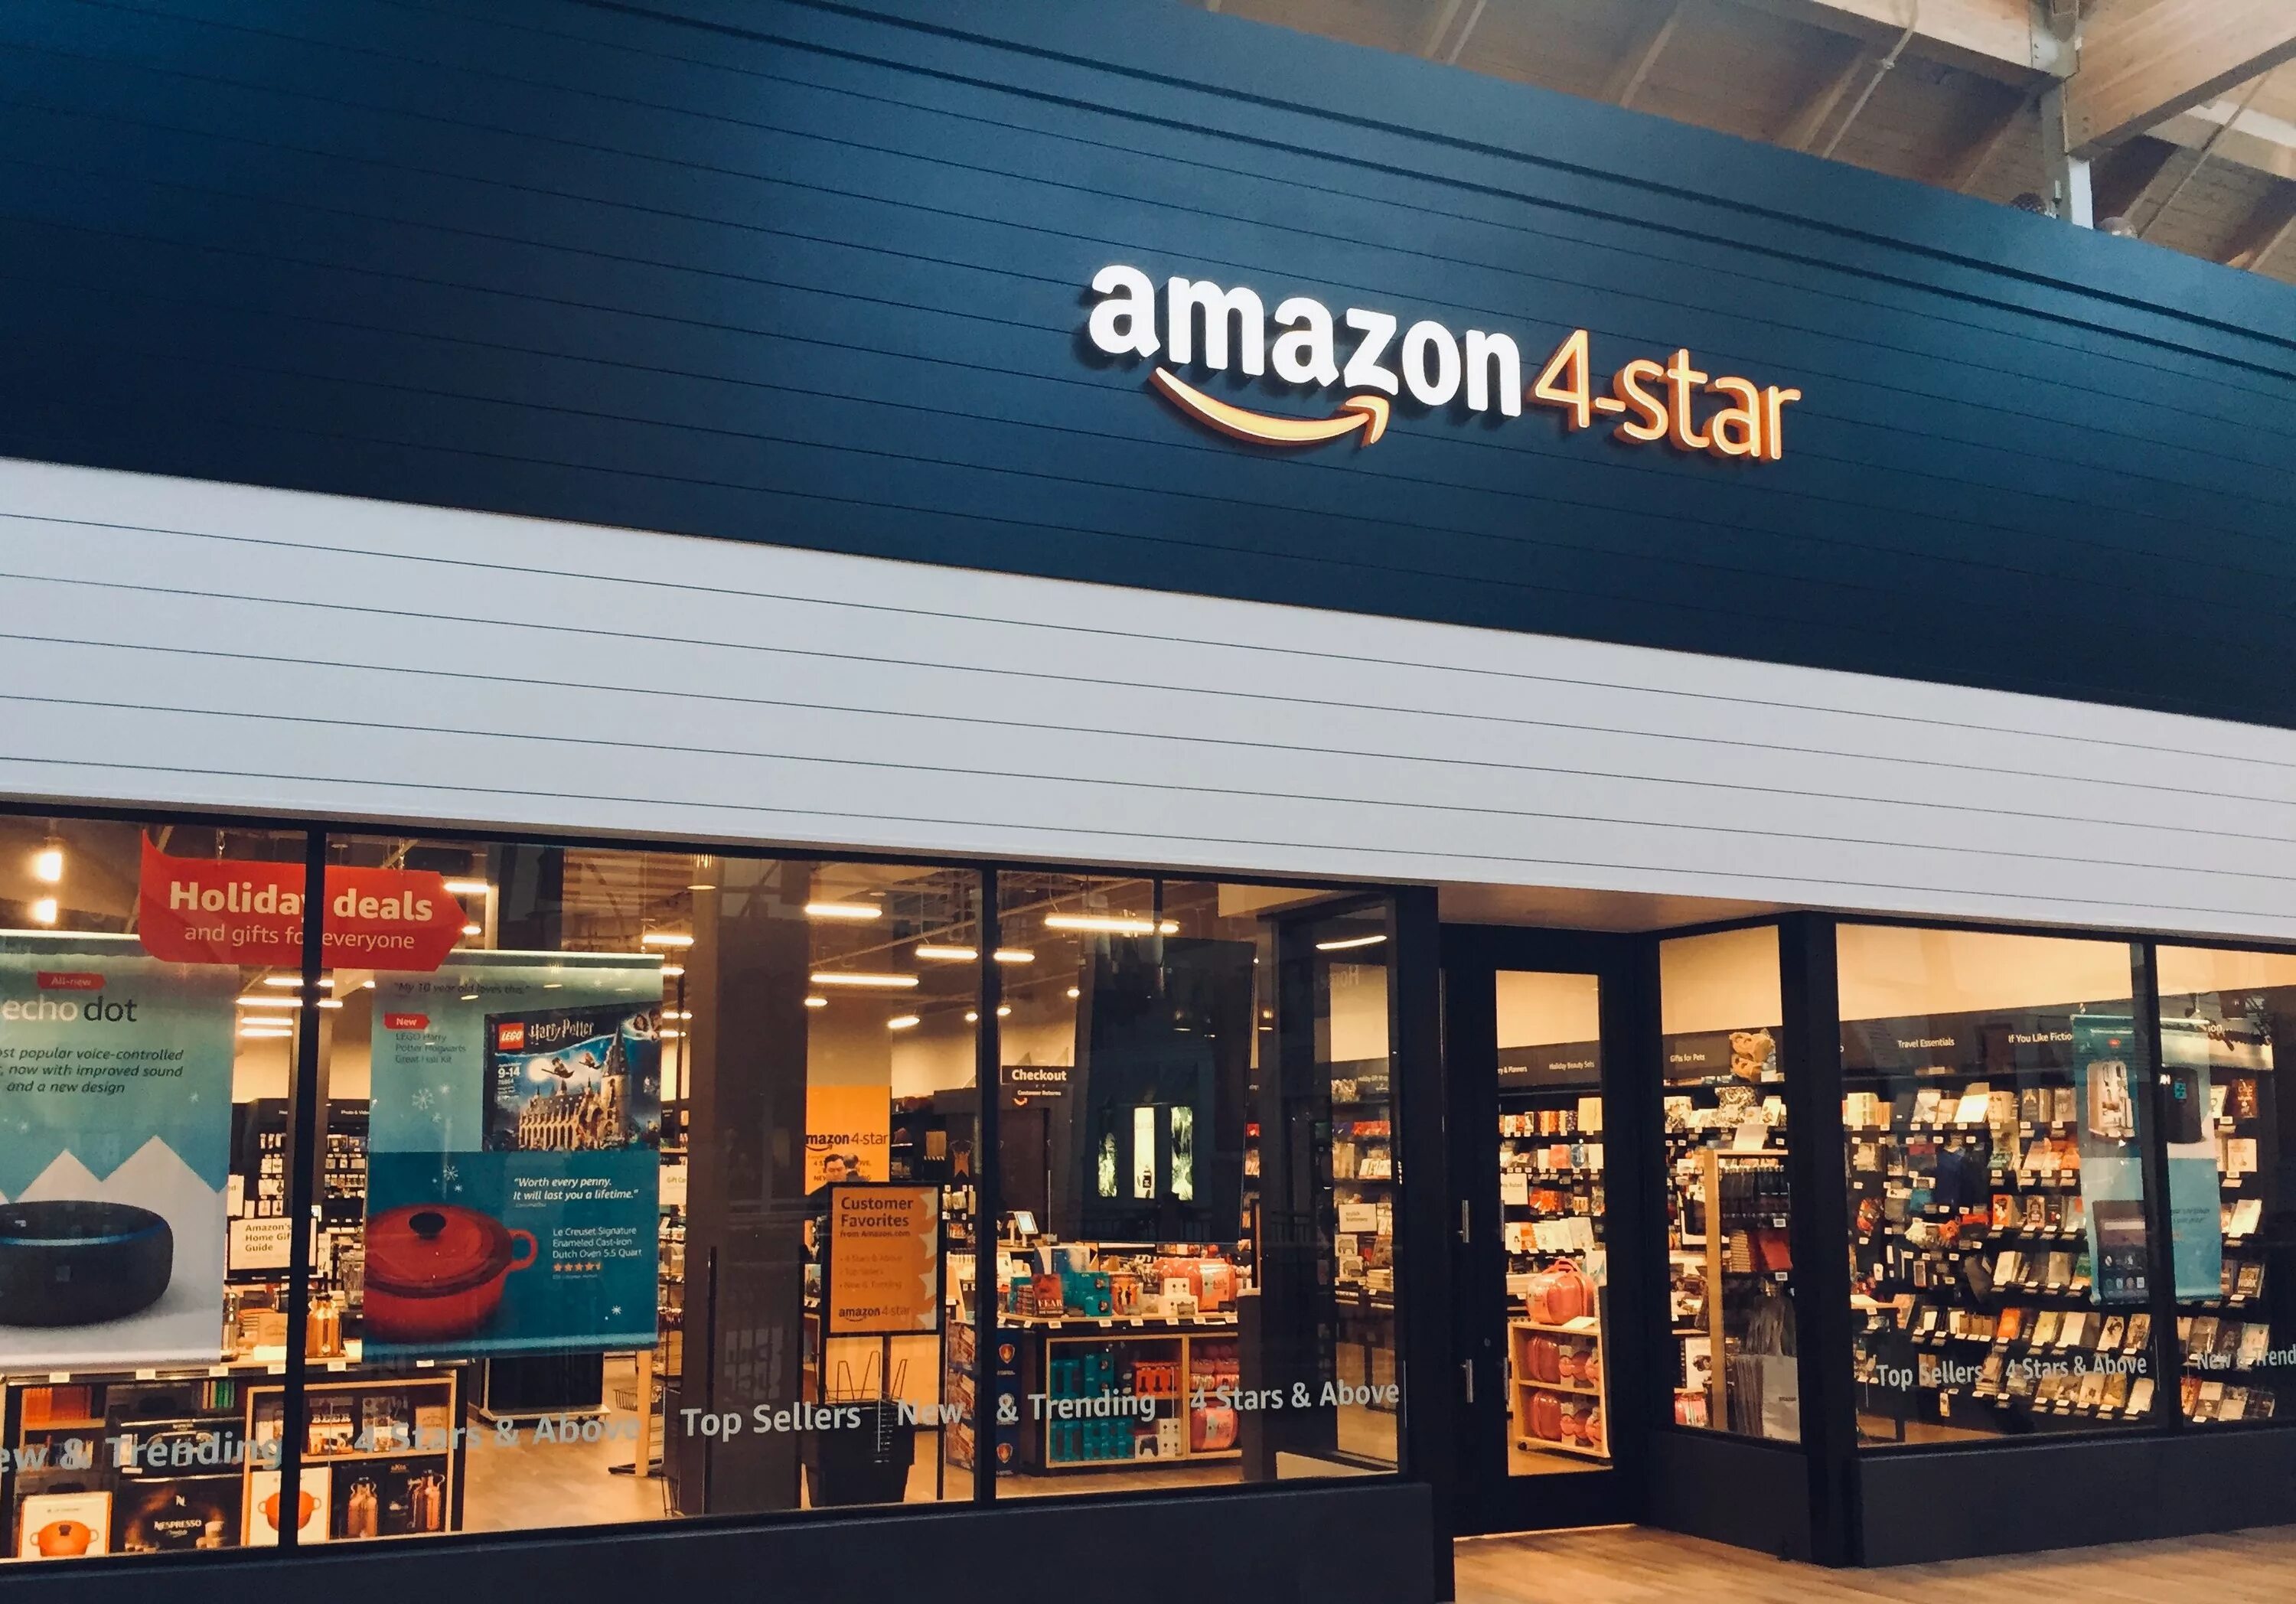 Топ амазона. Амазон магазин. Amazon 4-Star. The Amazon. Amazon магазин фото.